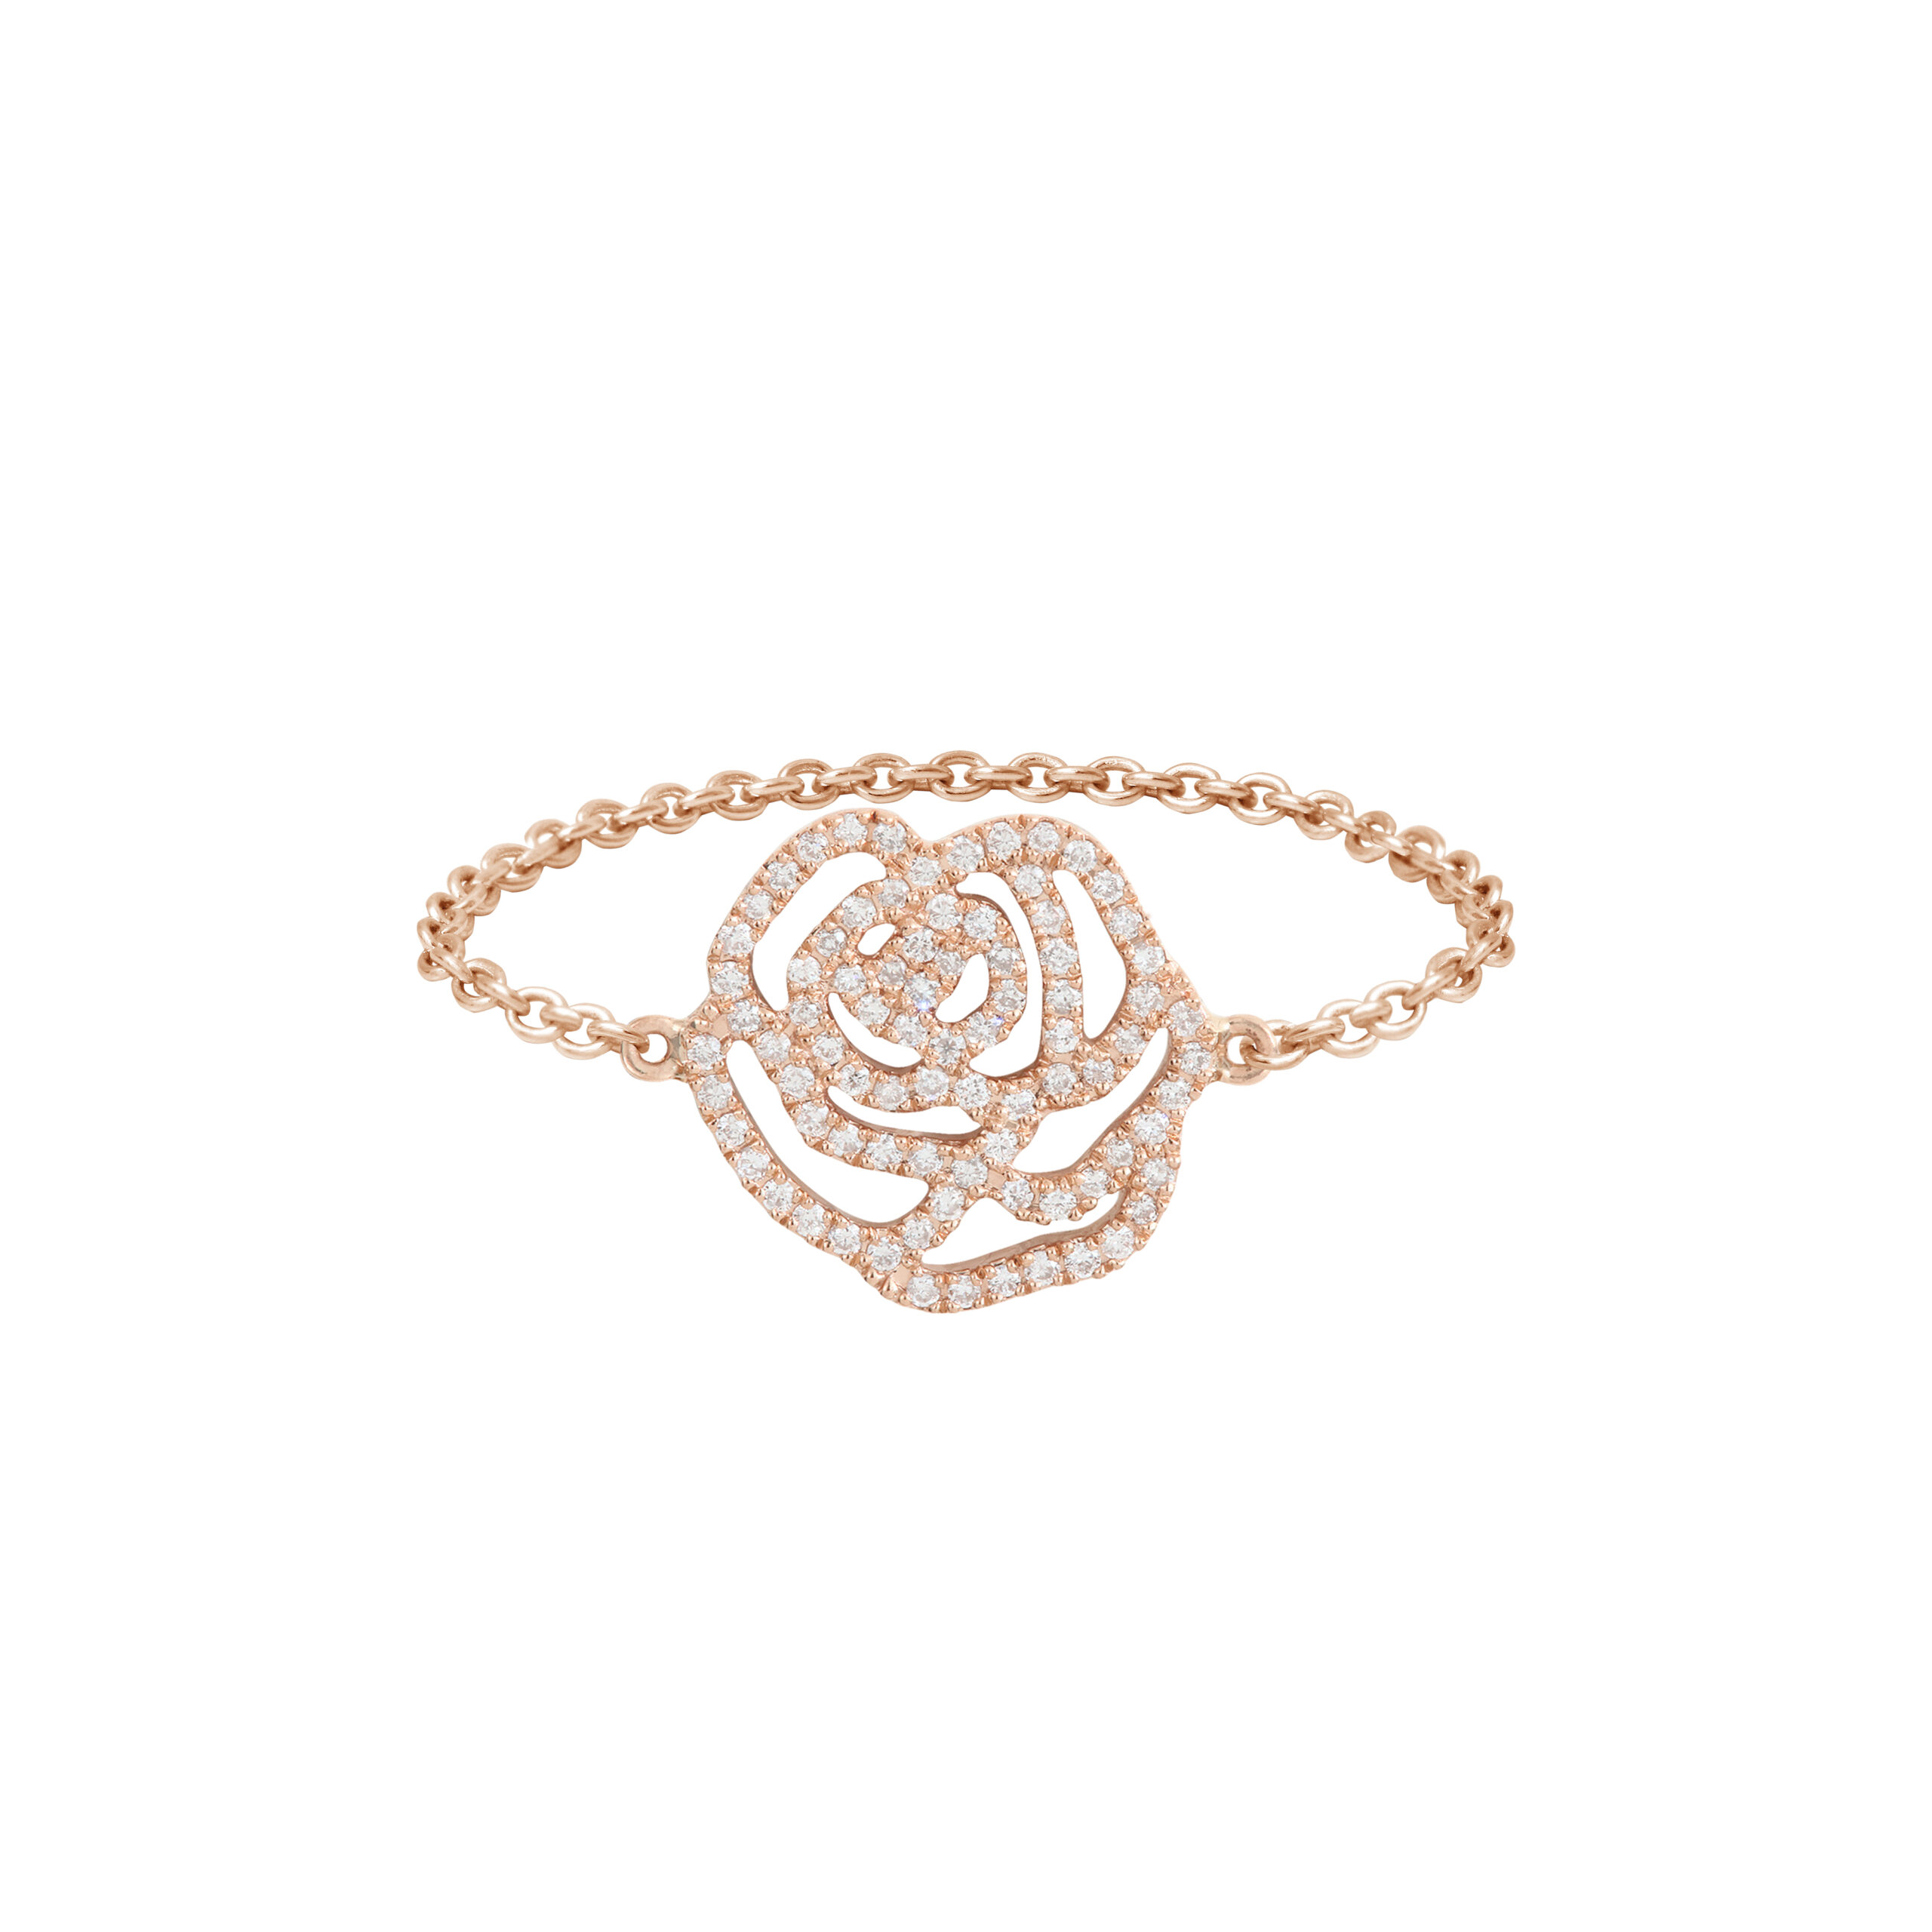 Bague chaînette fleur la Rose en or rose est un bijou de joaillerie fine fabriqué en France. Plate et moderne, c'est un cadeau idéal pour un anniversaire, des fiançailles ou un mariage.